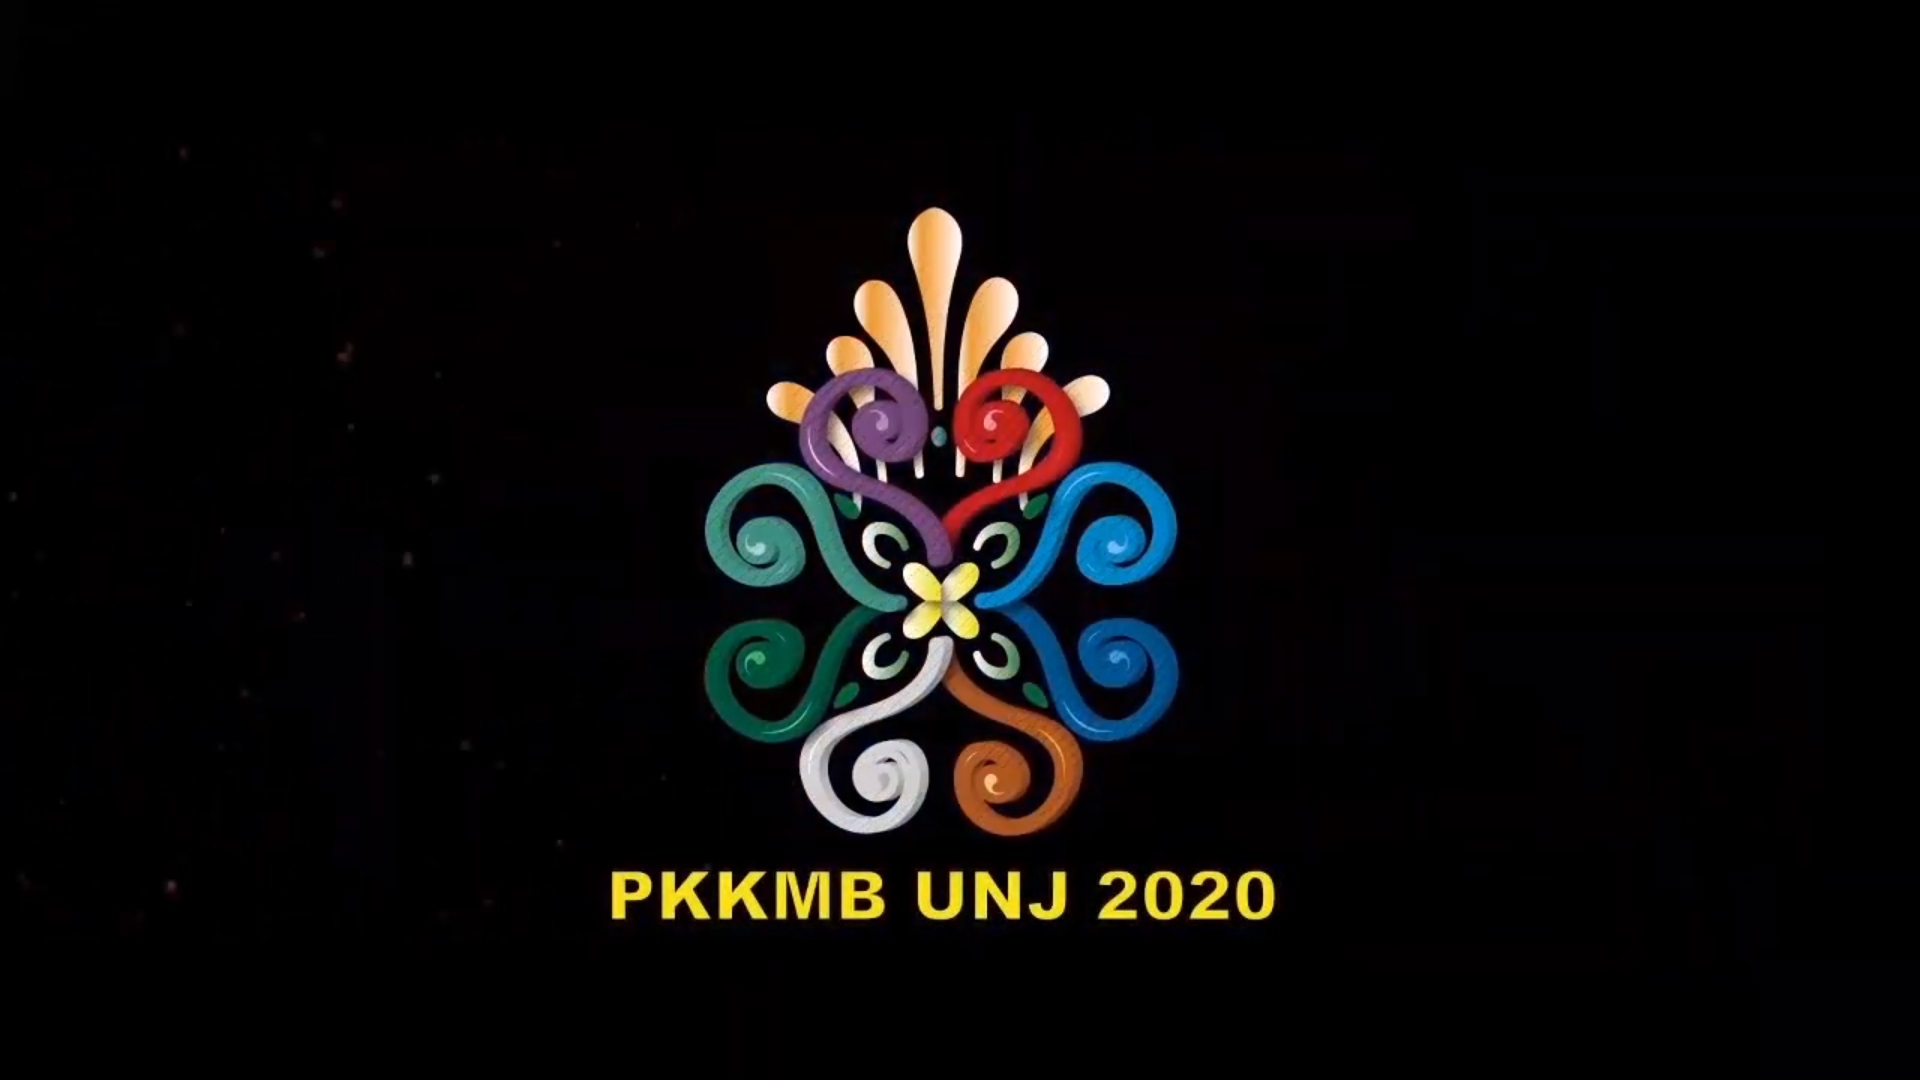 Tautan untuk Penutupan PKKMB UNJ 2020